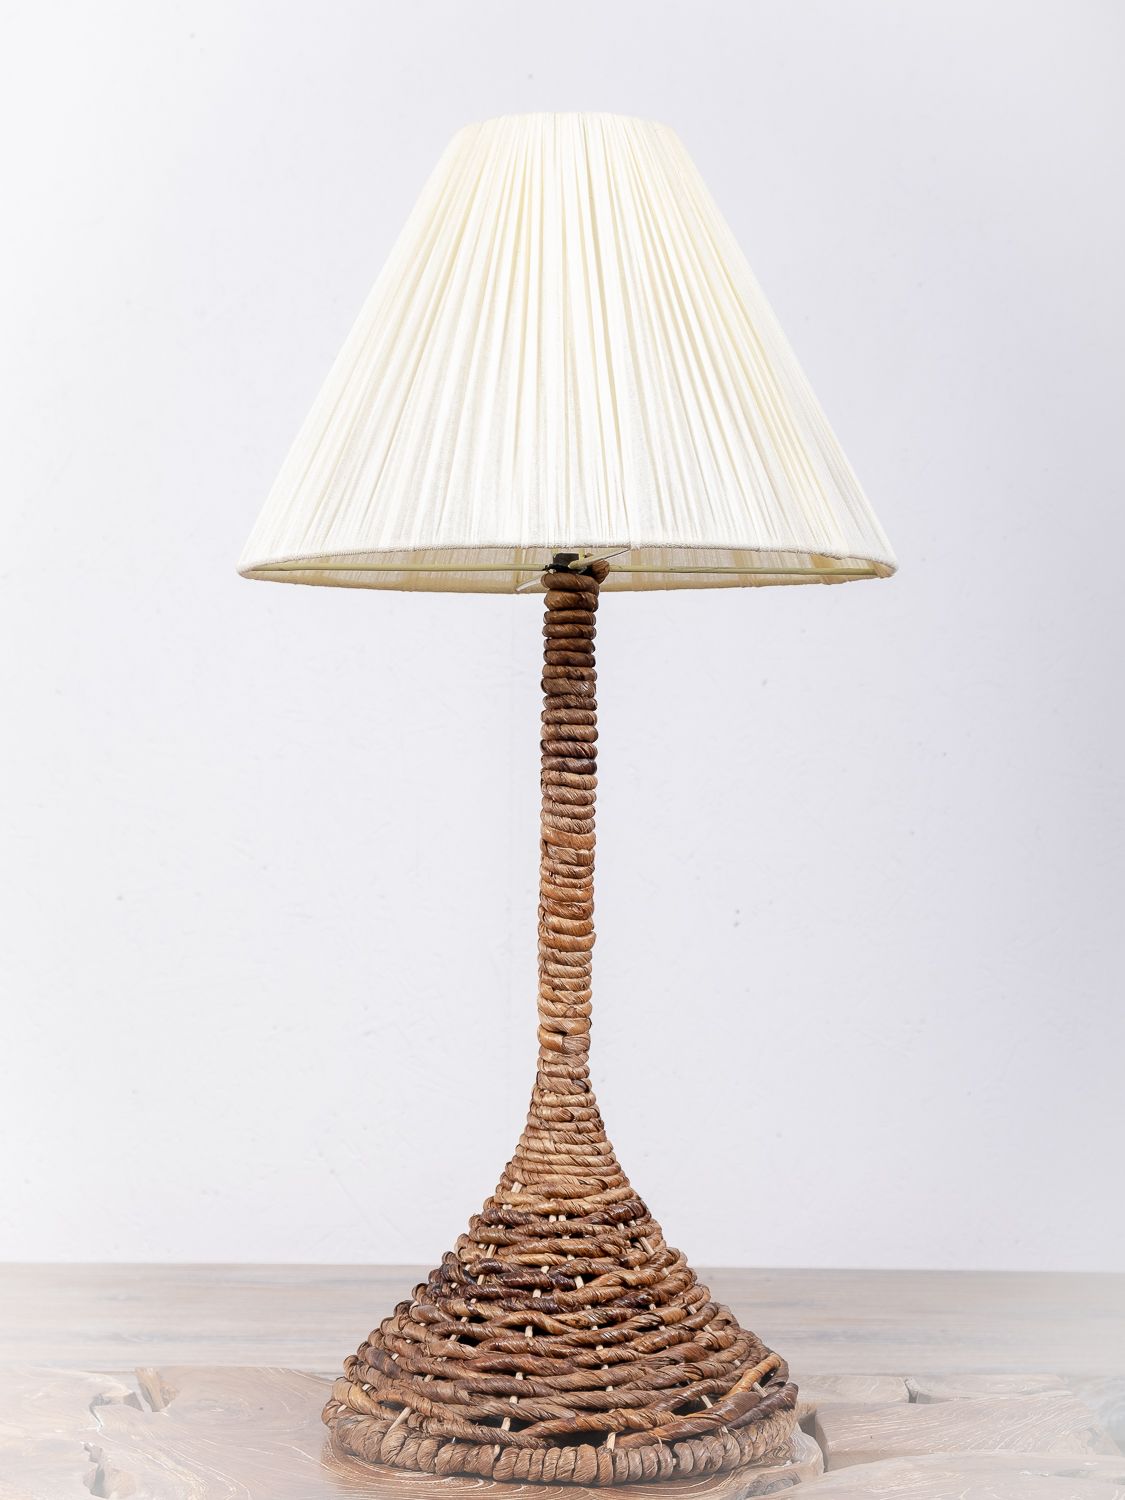 Lampa (stínítko) z přírodních materiálů Bali 014 - ID1606408